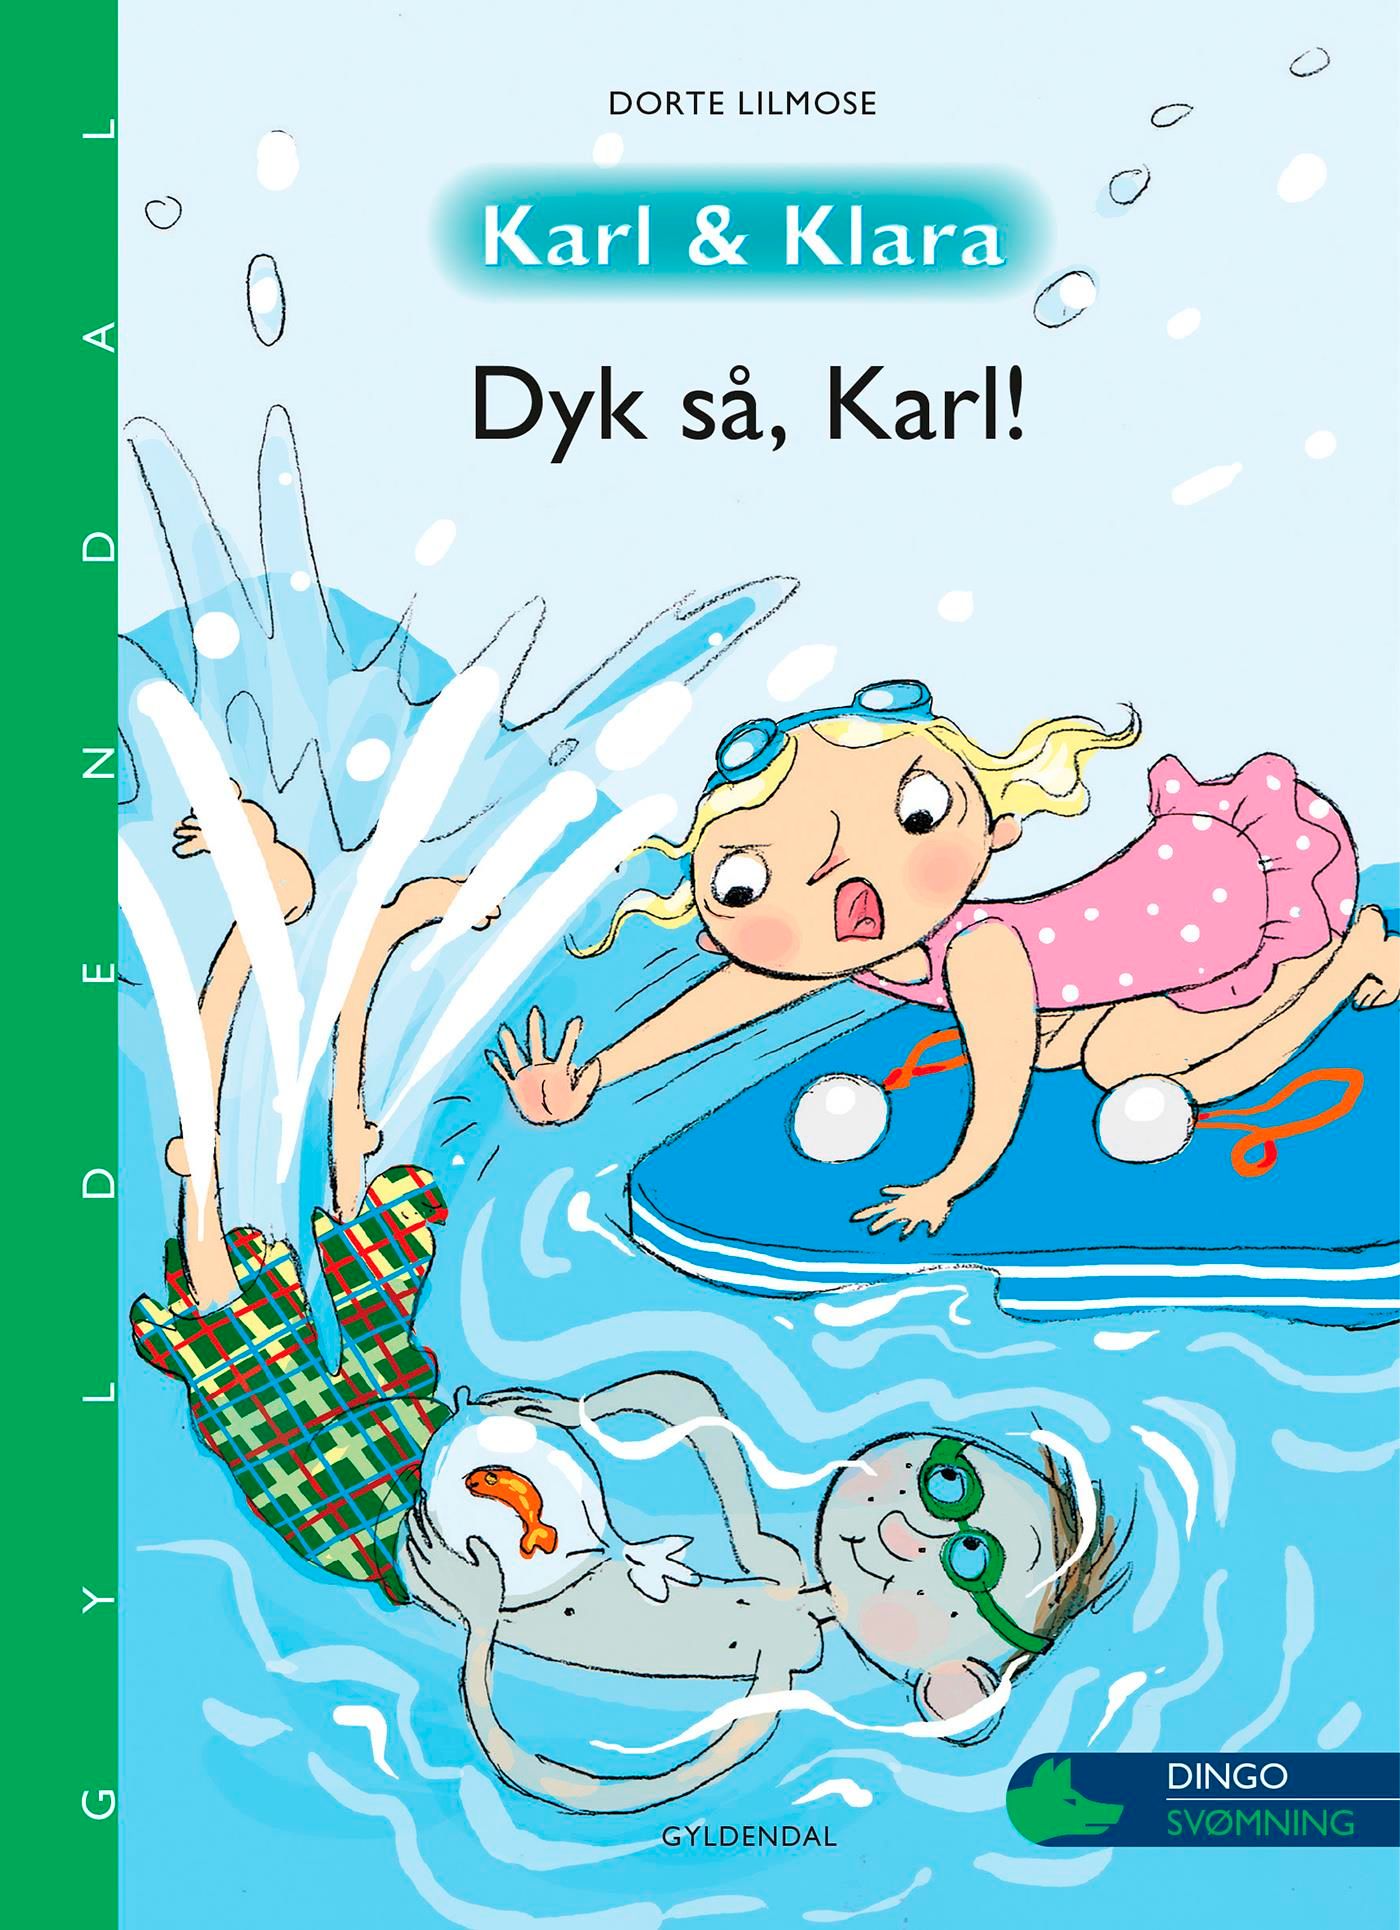 Karl og Klara - Dyk så, Karl!, e-bog af Dorte Lilmose